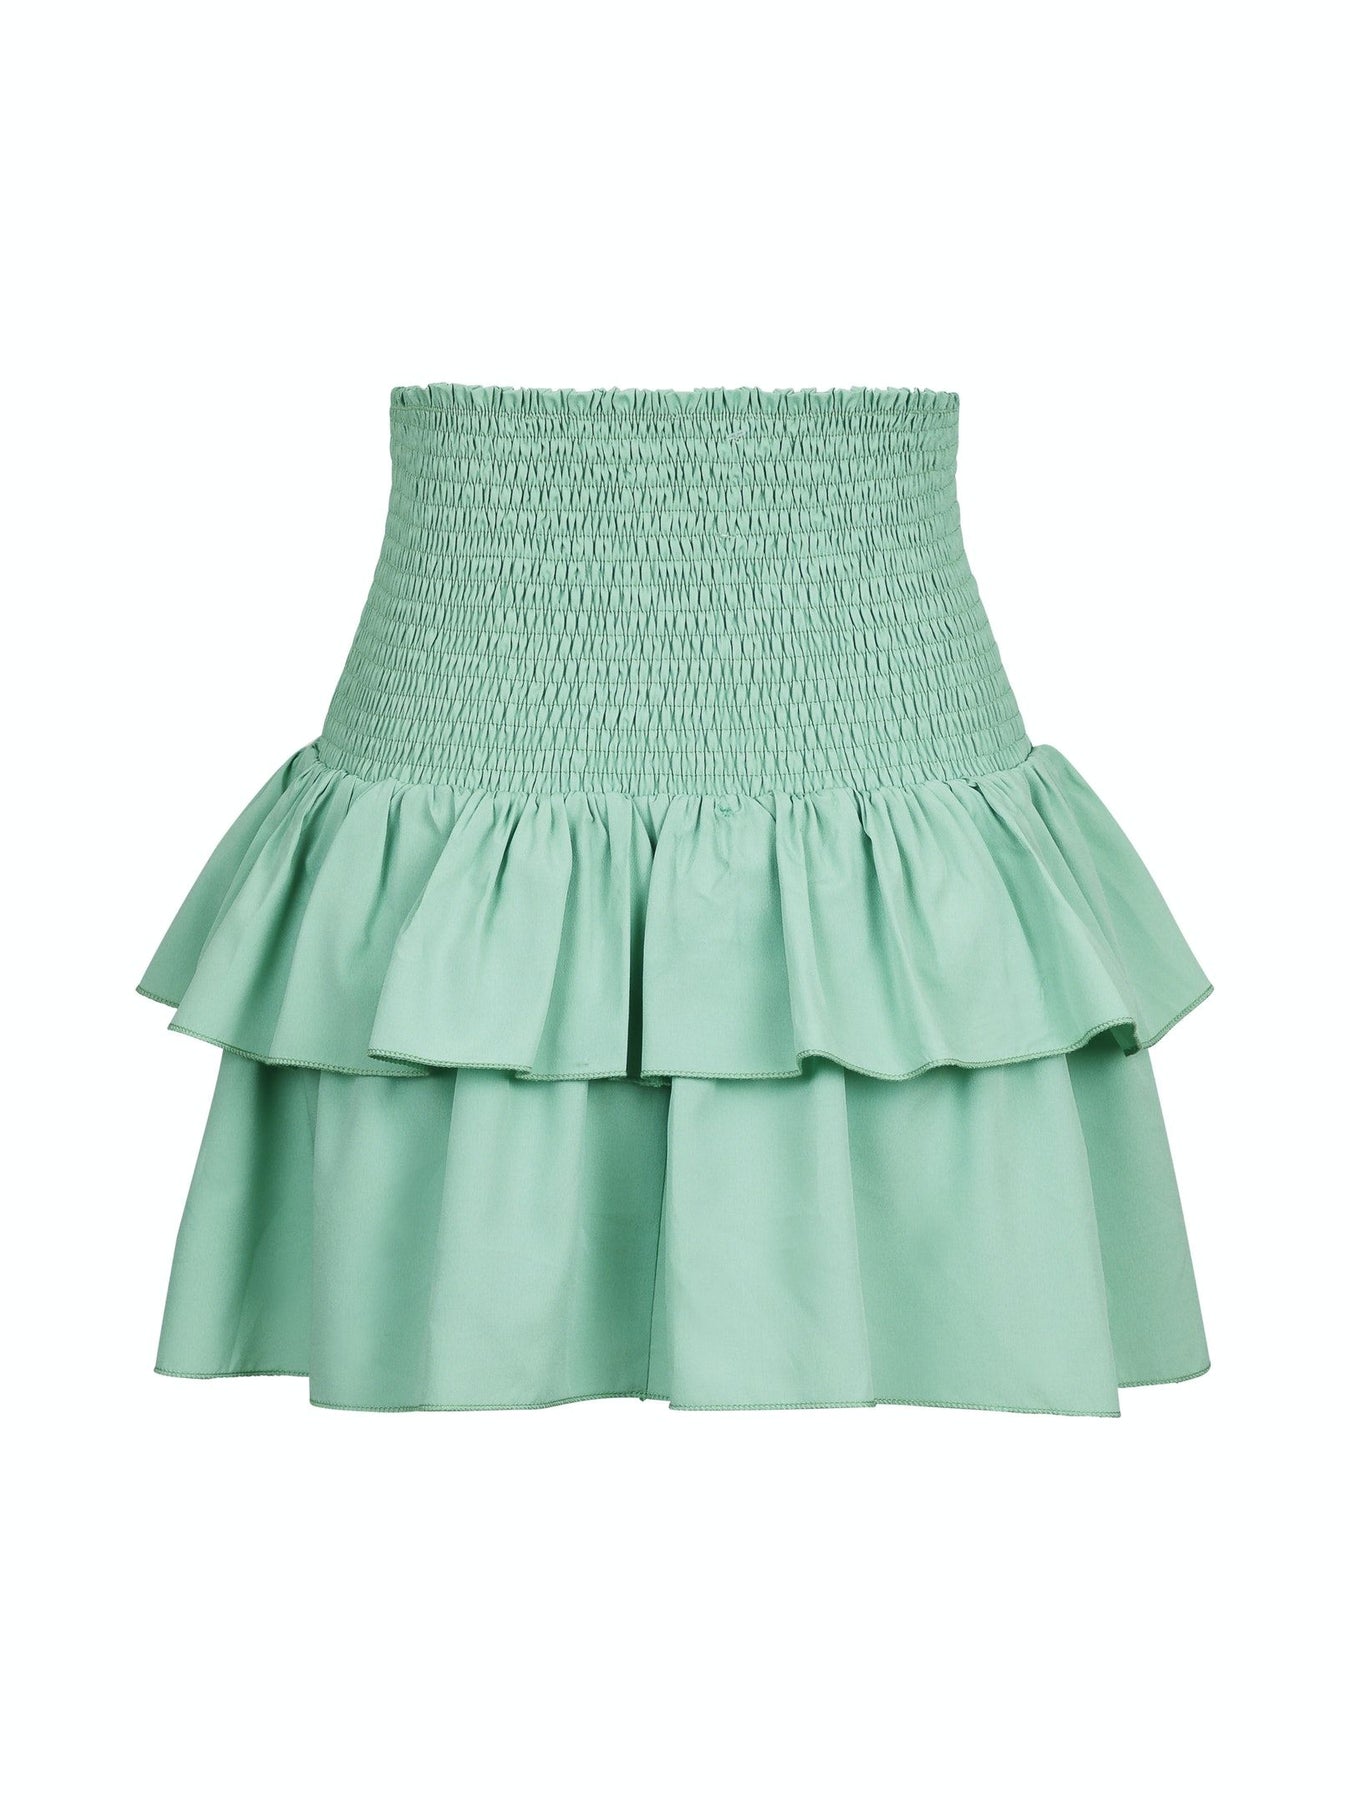 Carin R Skirt - Green